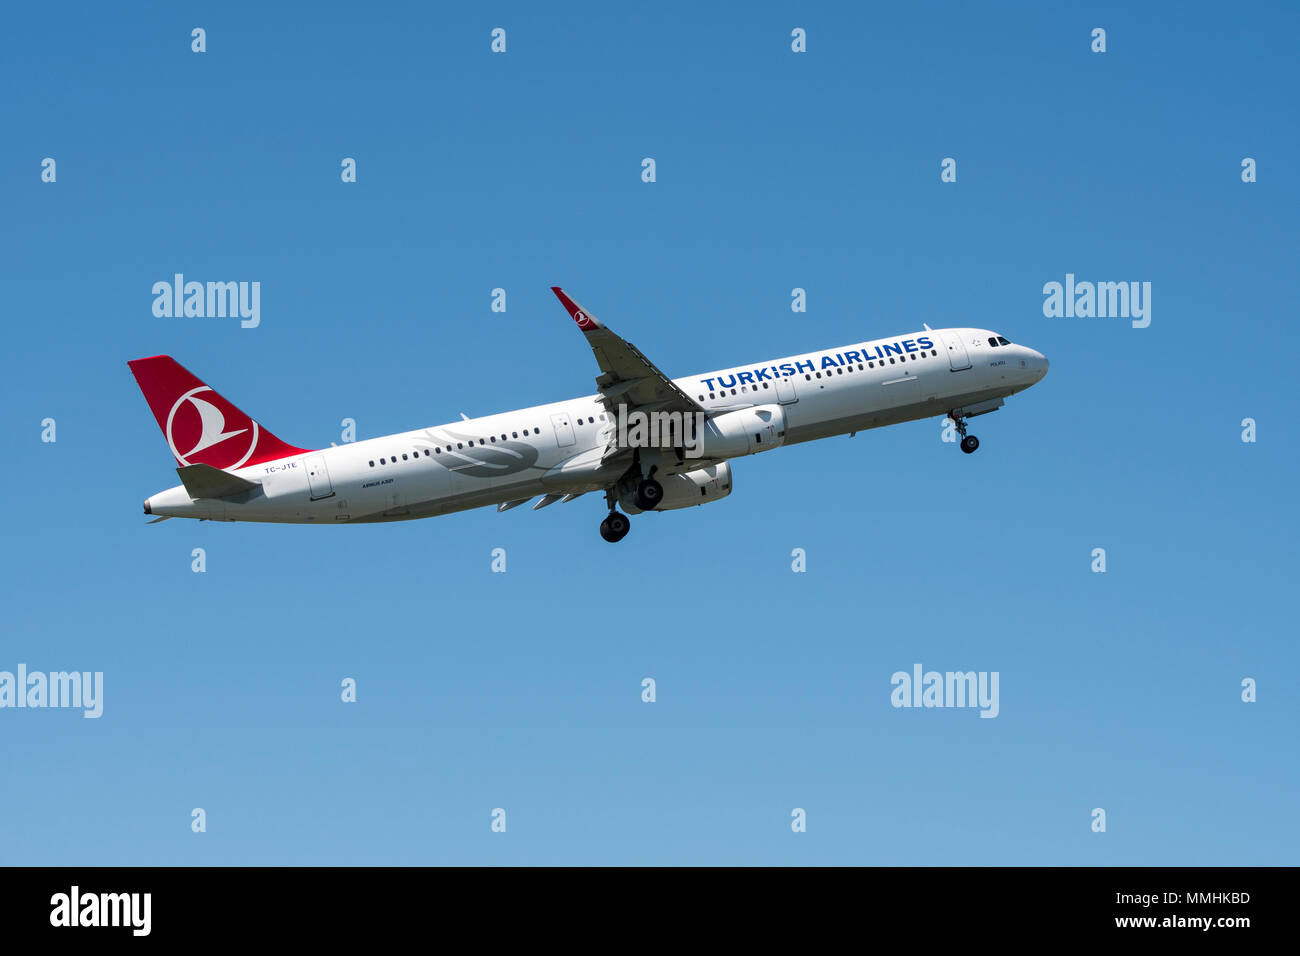 Airbus A321-231, fuselage étroit, bimoteur de transport commercial de passagers avion de ligne de Turkish Airlines en vol sur fond de ciel bleu Banque D'Images